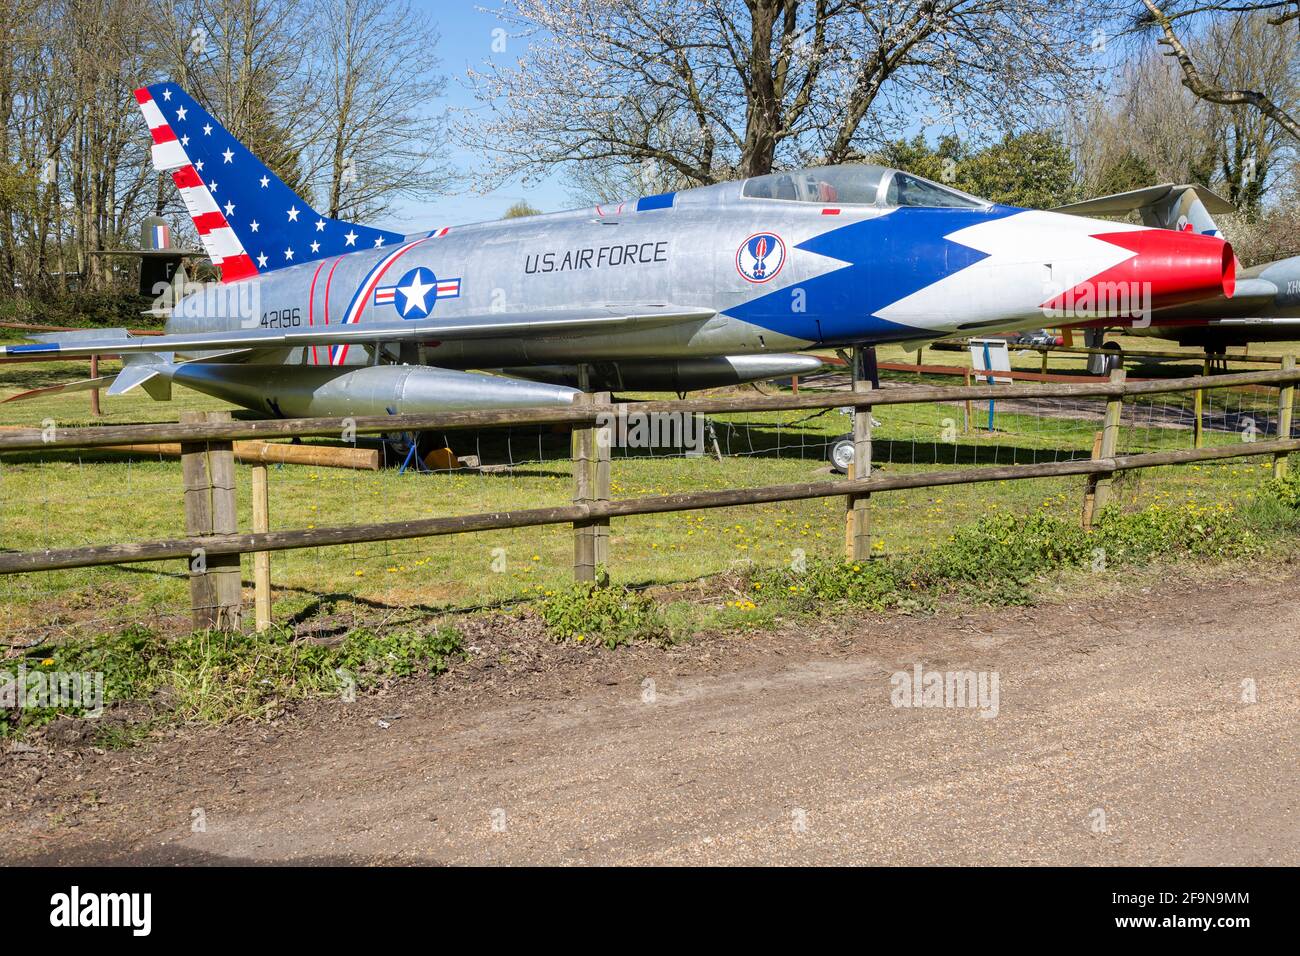 F-100D Super Sabre US Airforce avion, Norfolk et Suffolk musée de l'aviation, Flixton, Angleterre, Royaume-Uni 1956 Banque D'Images